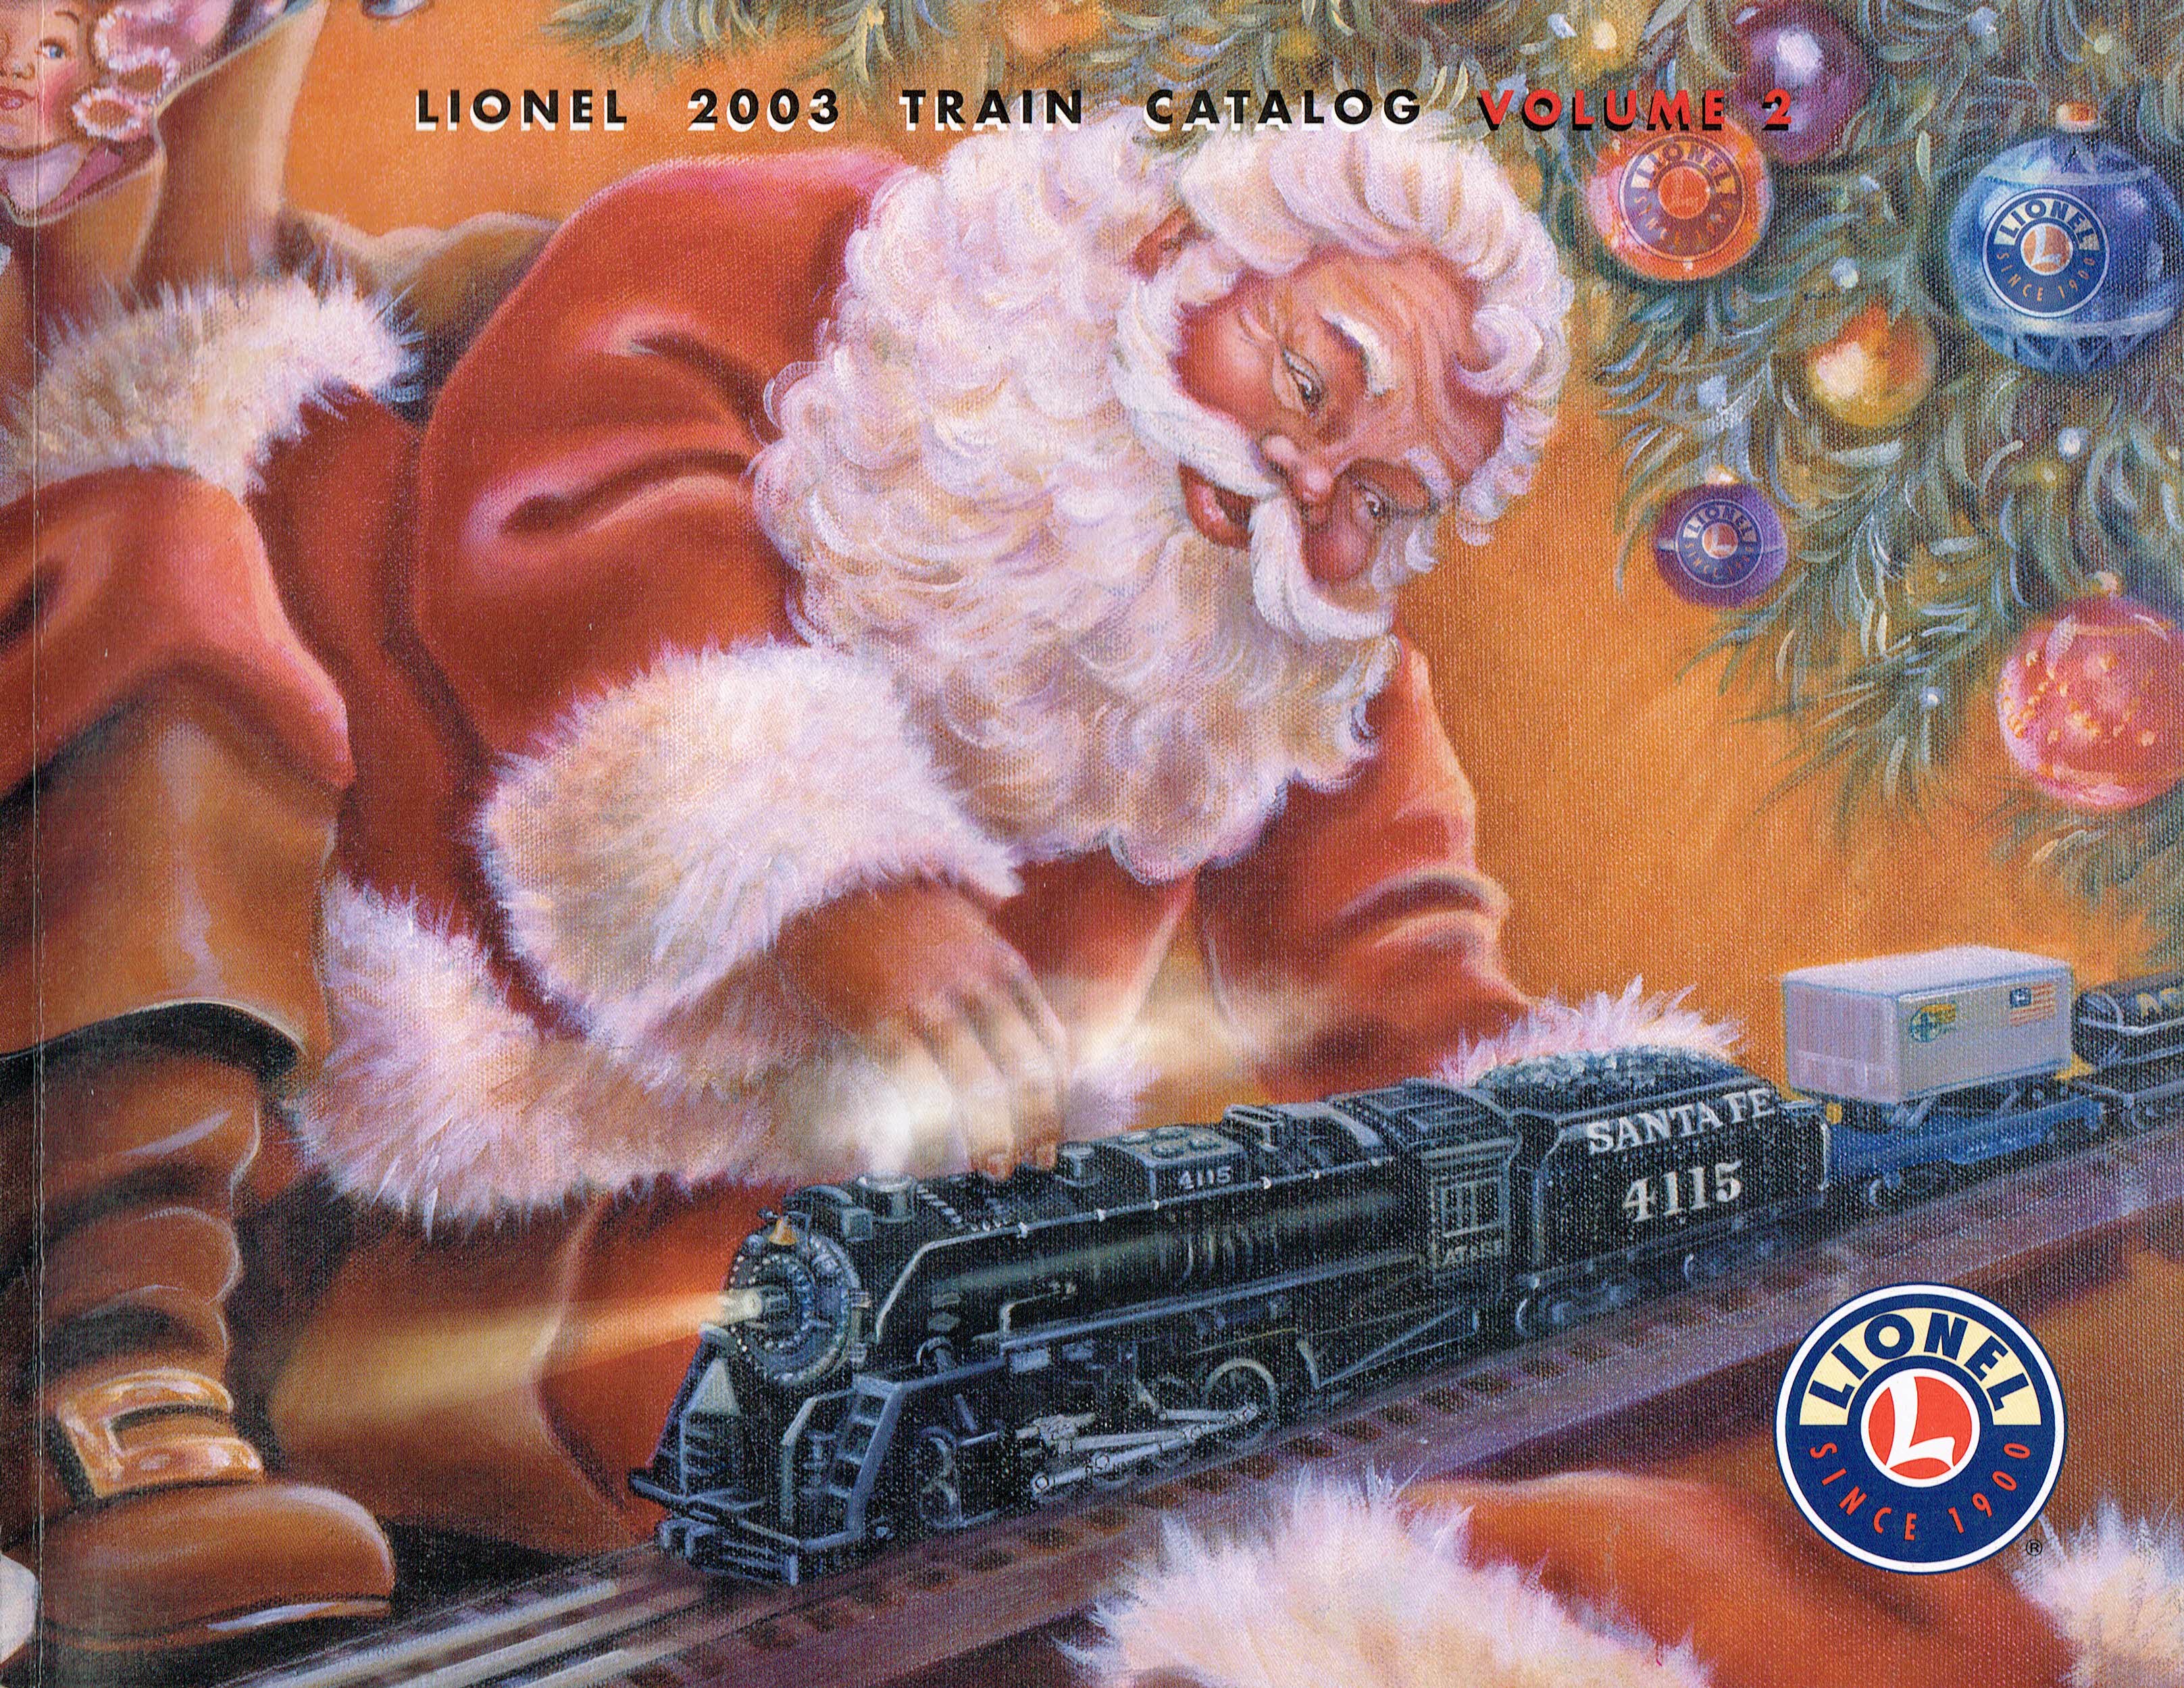 Lionel 2003 Train Catalog Volume 2 image